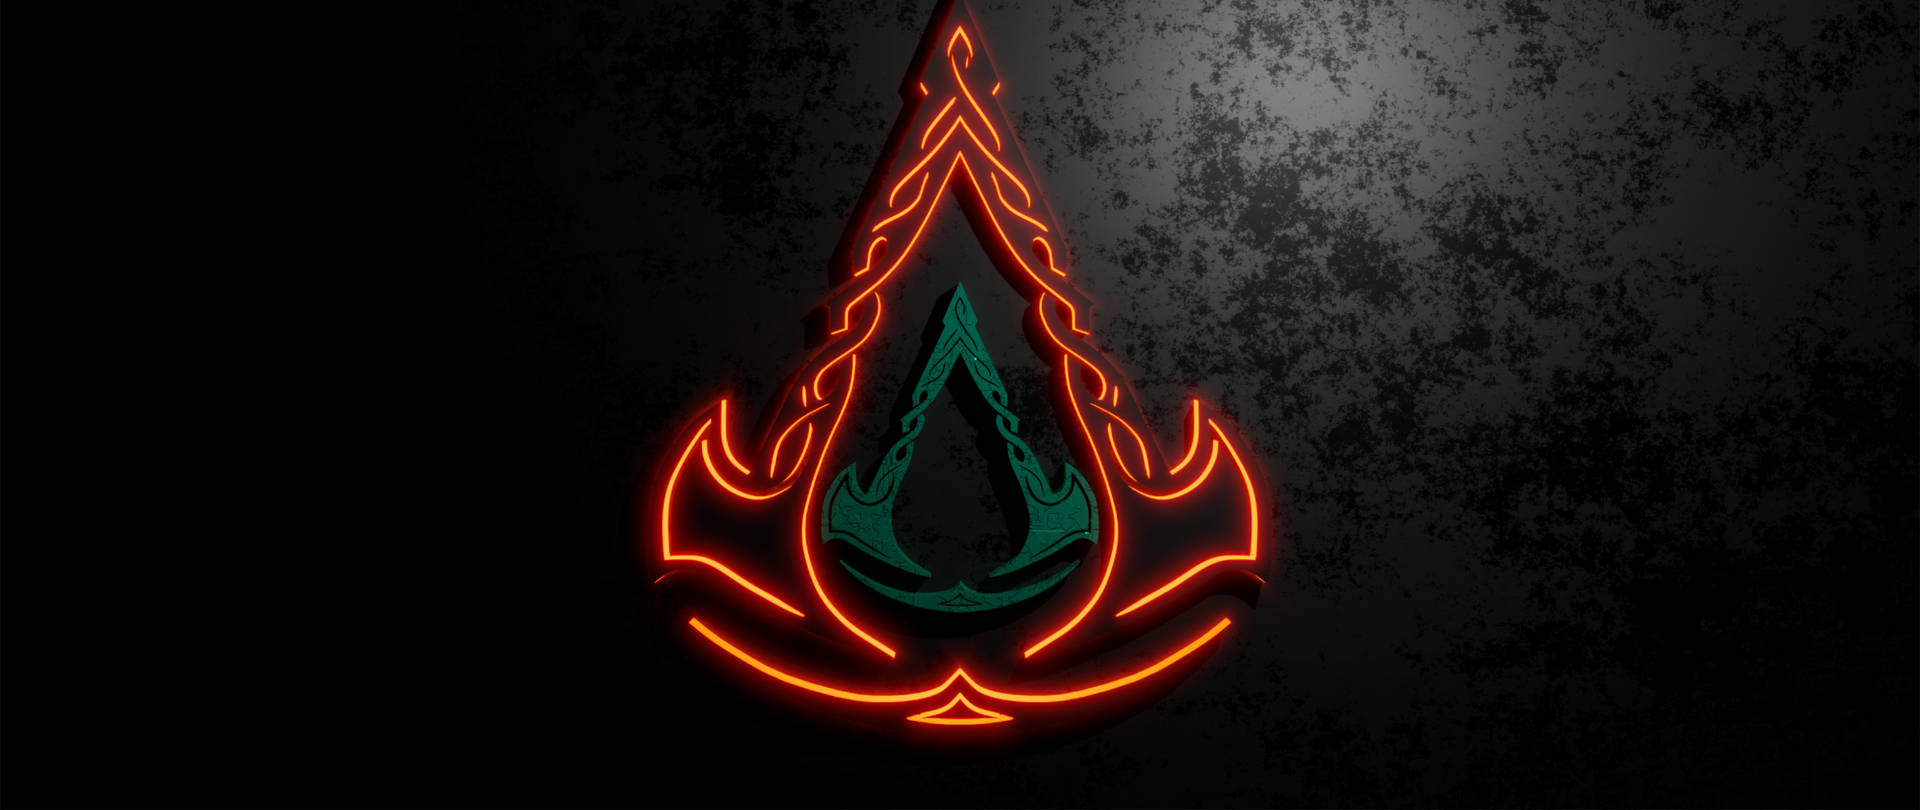 Ac Valhalla Neon Light Logo Background